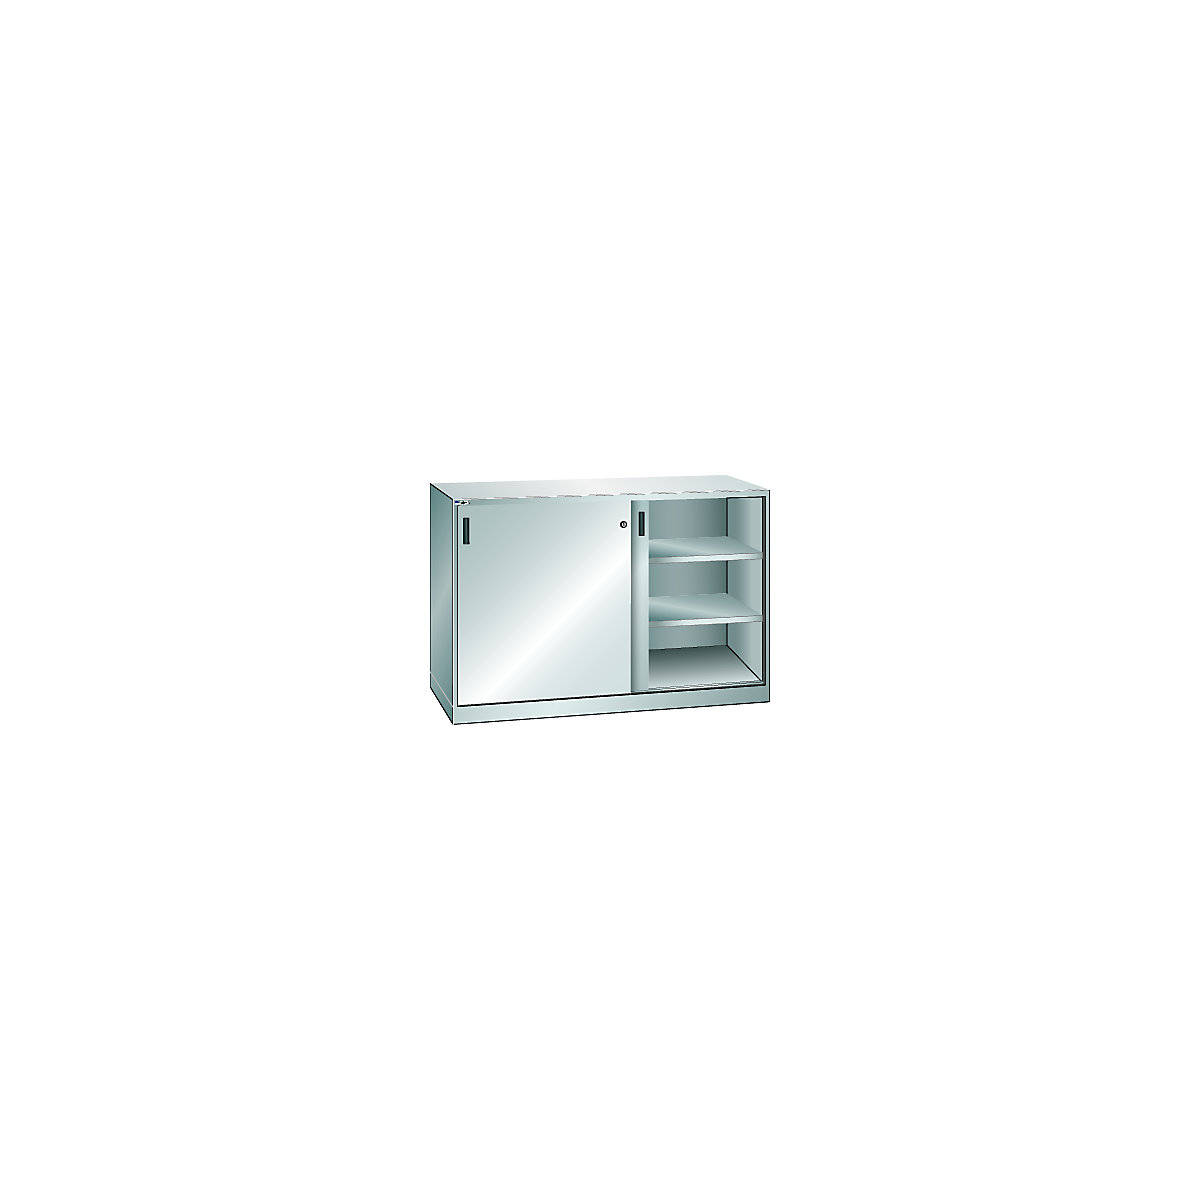 Skriňa s posuvnými dverami – LISTA, v x š 1000 x 1500 mm, deliaca stena, hĺbka 500 mm, svetlošedá RAL 7035